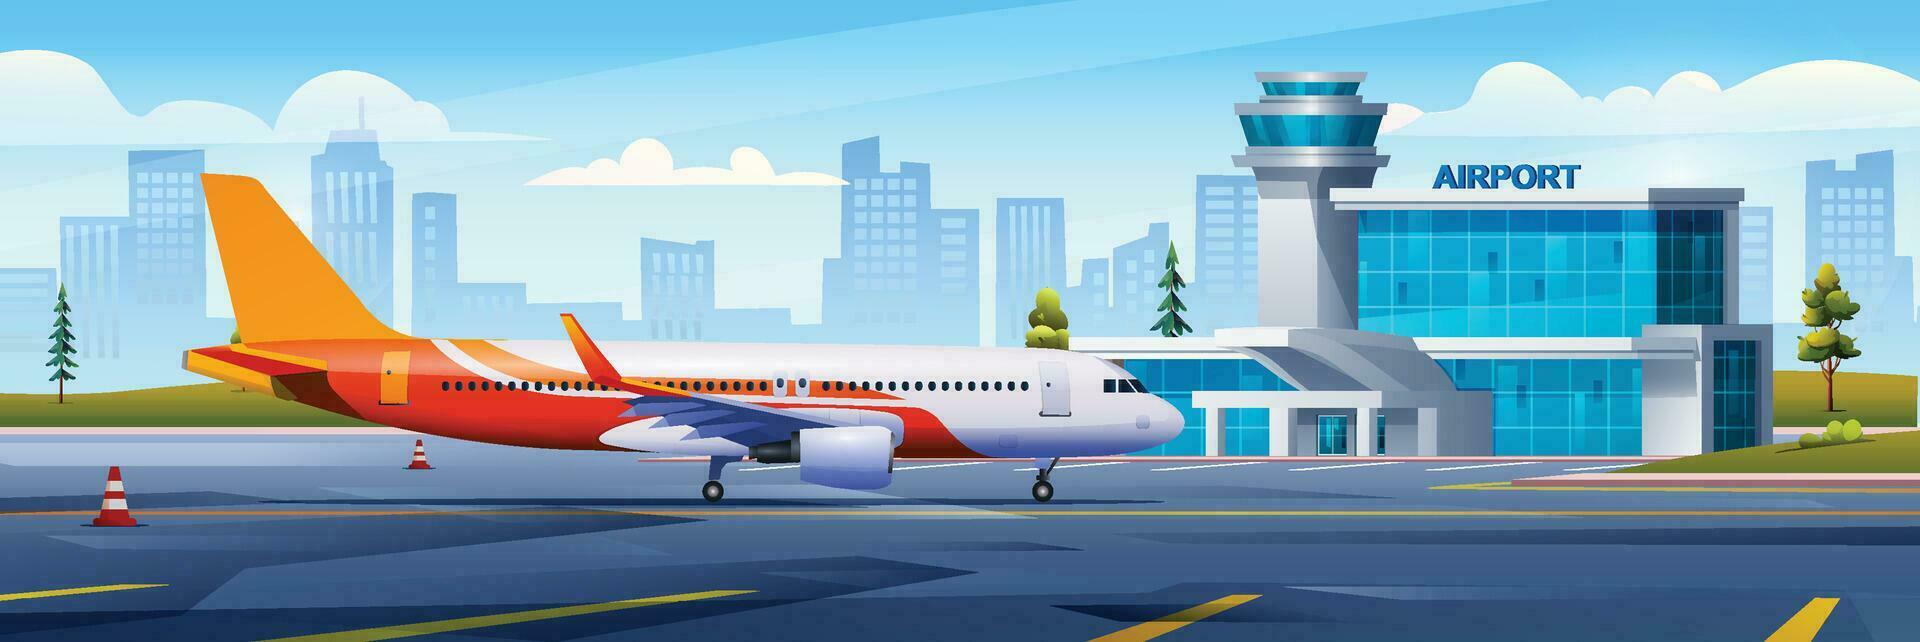 internacional aeropuerto edificio con avión, Terminal, portón y pista en paisaje urbano antecedentes. vector dibujos animados ilustración